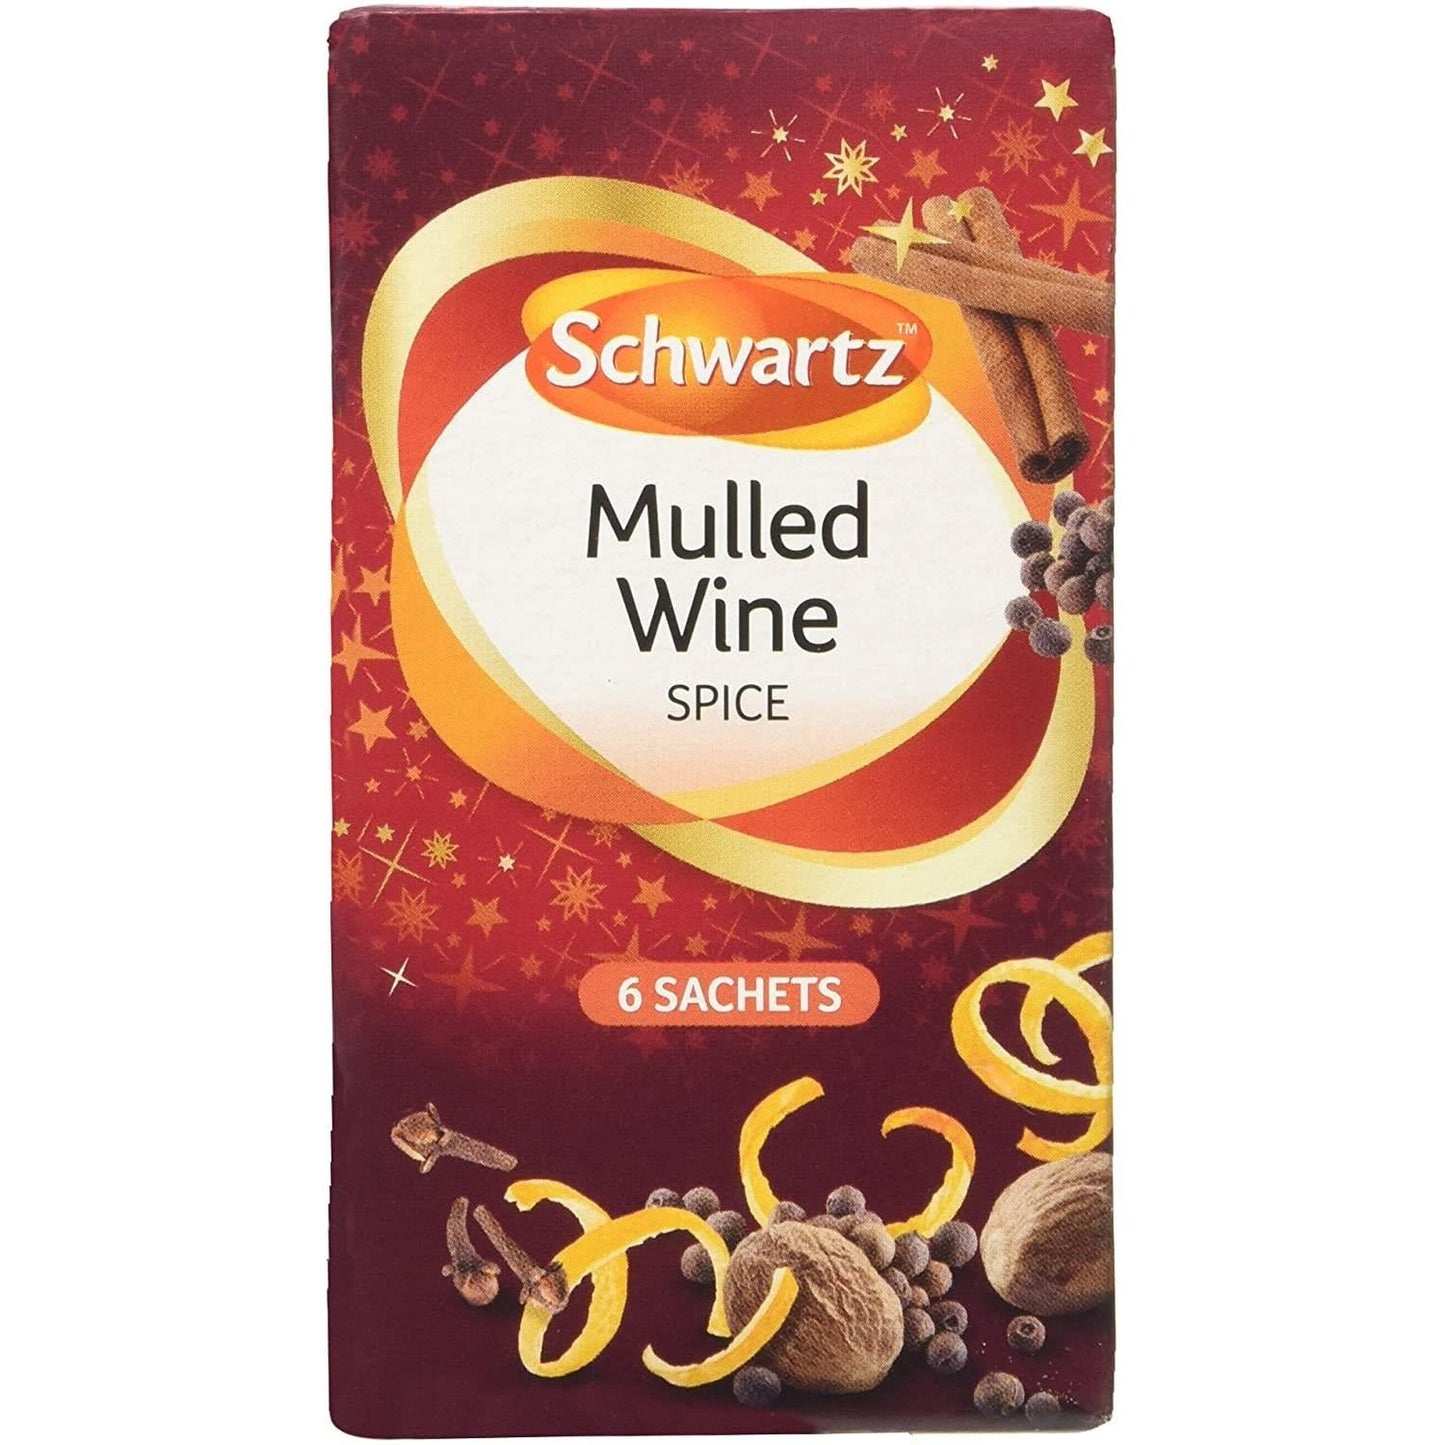 Schwartz Mulled Wine Spice Box 18g